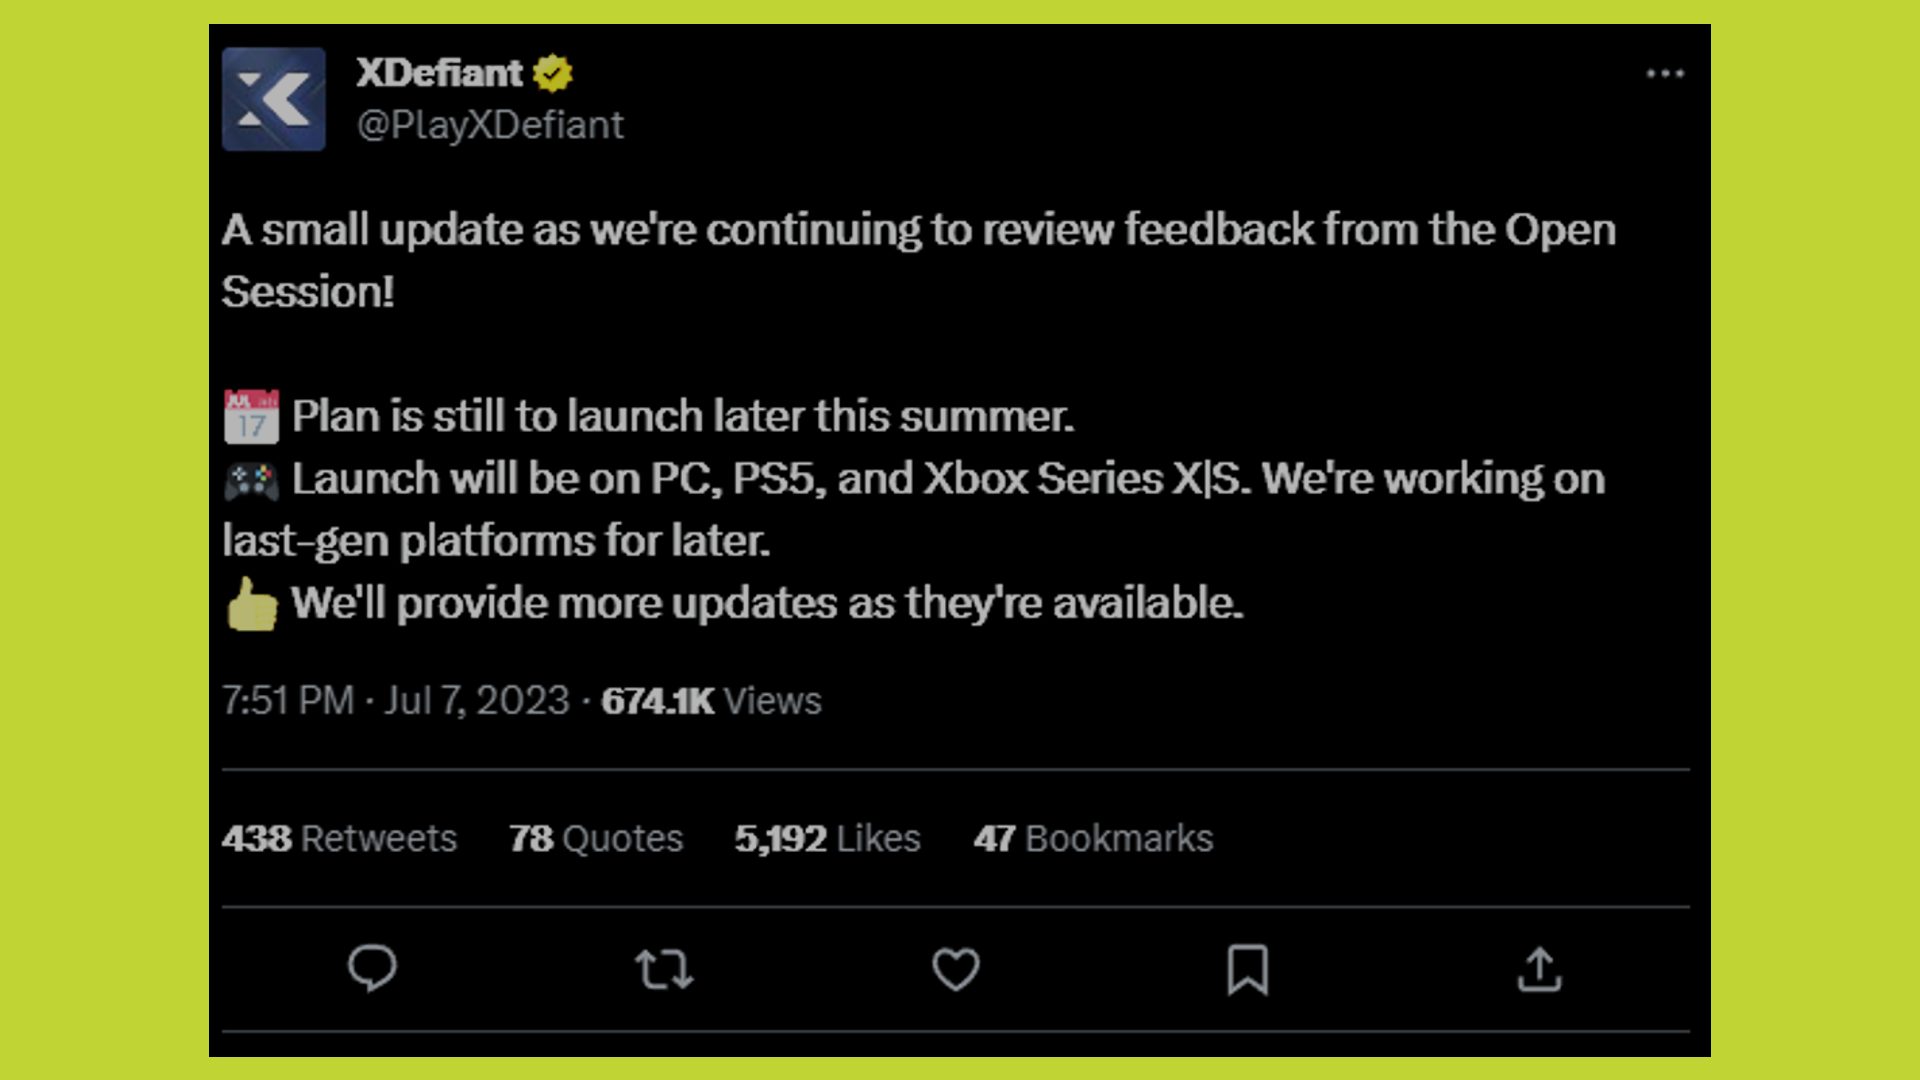 Data de lançamento do XDefiant: o tweet anunciando um atraso PS4, Xbox One pode ser visto